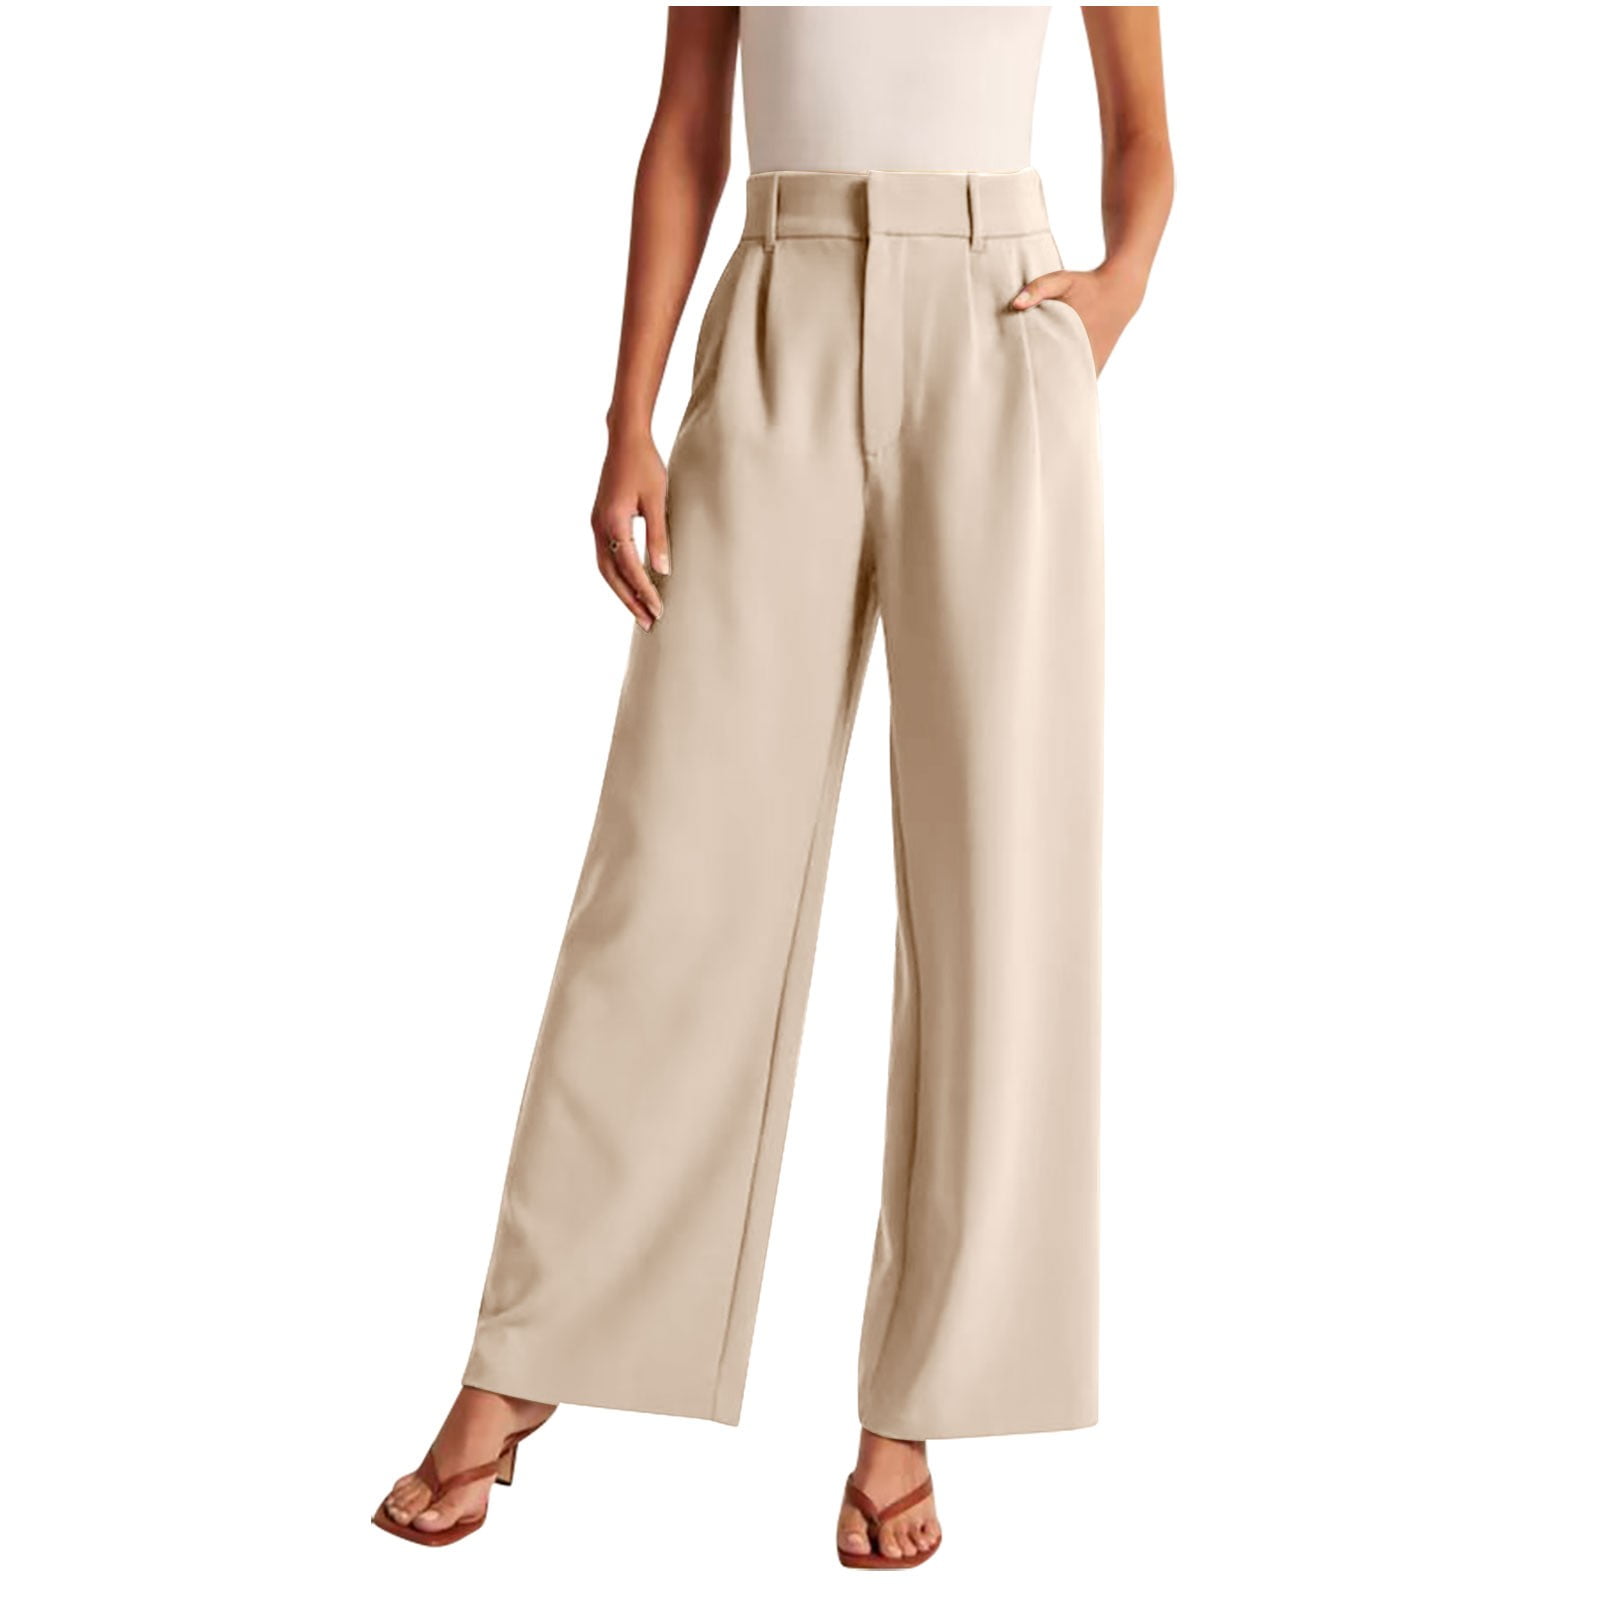 Booker Women Wide Leg Pants For Women Work Business Casual High Waisted Dress  Pants Flowy Trousers Office - Walmart.com